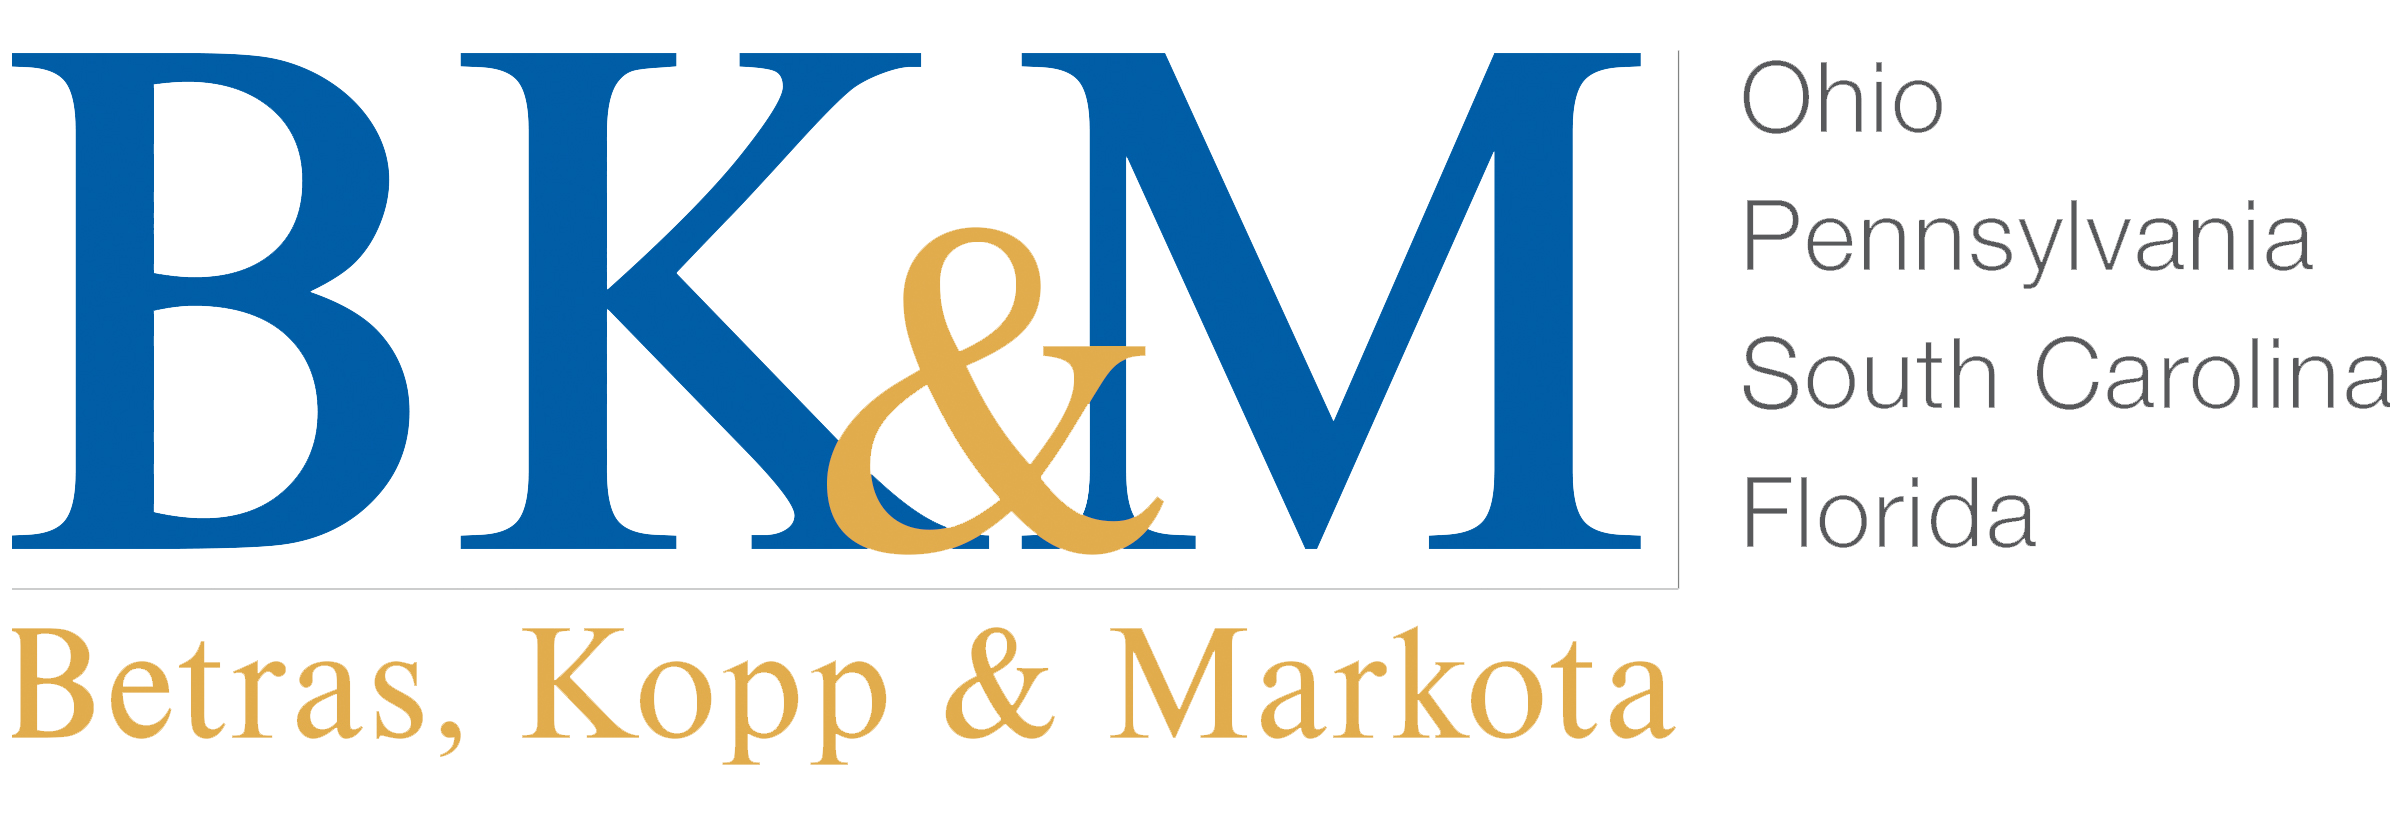 BKM-logo-mobile